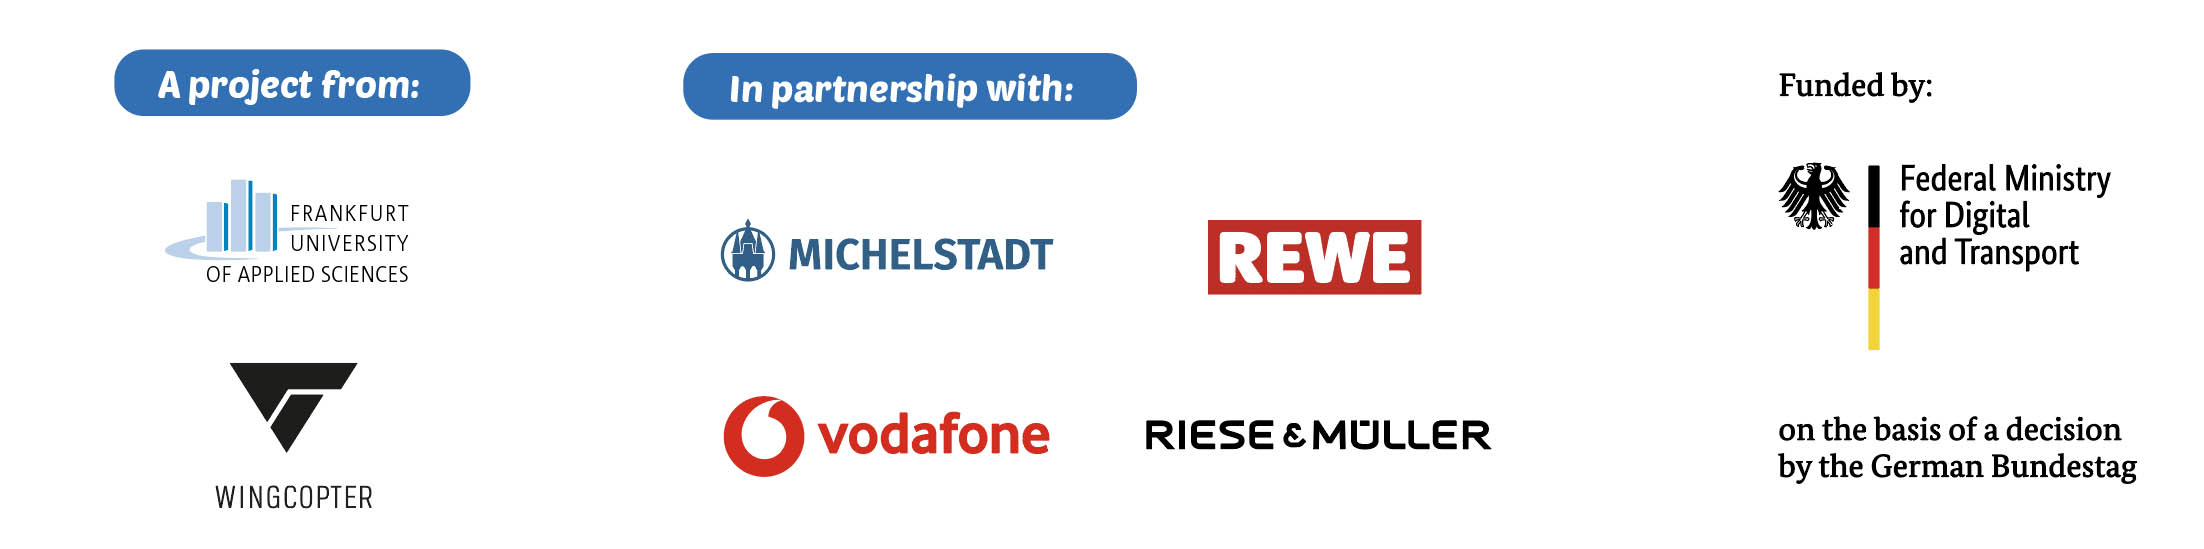 Partner_odenwald_en